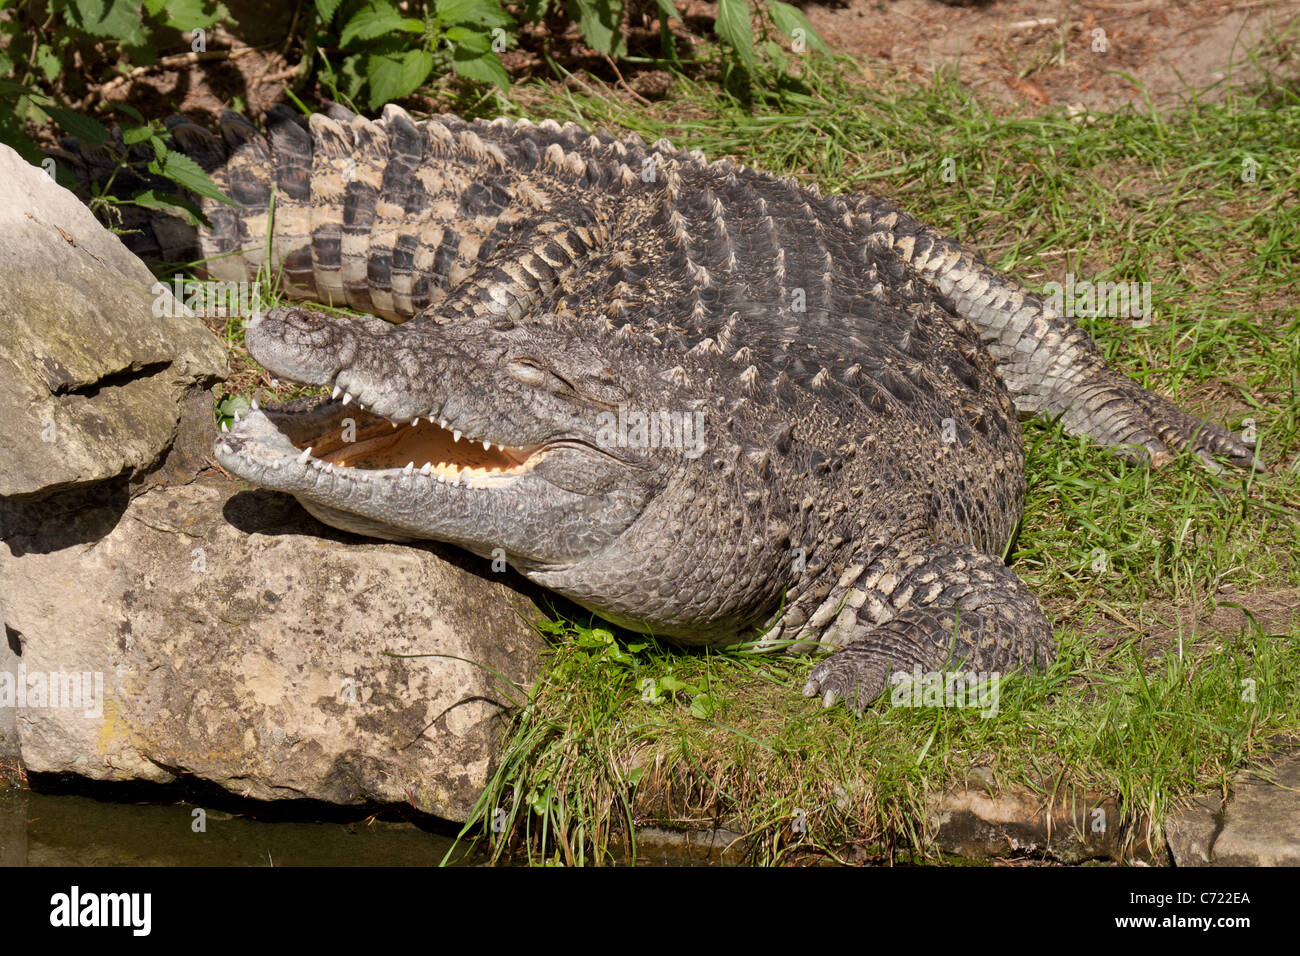 crocodile lying on river bank Stock Photo